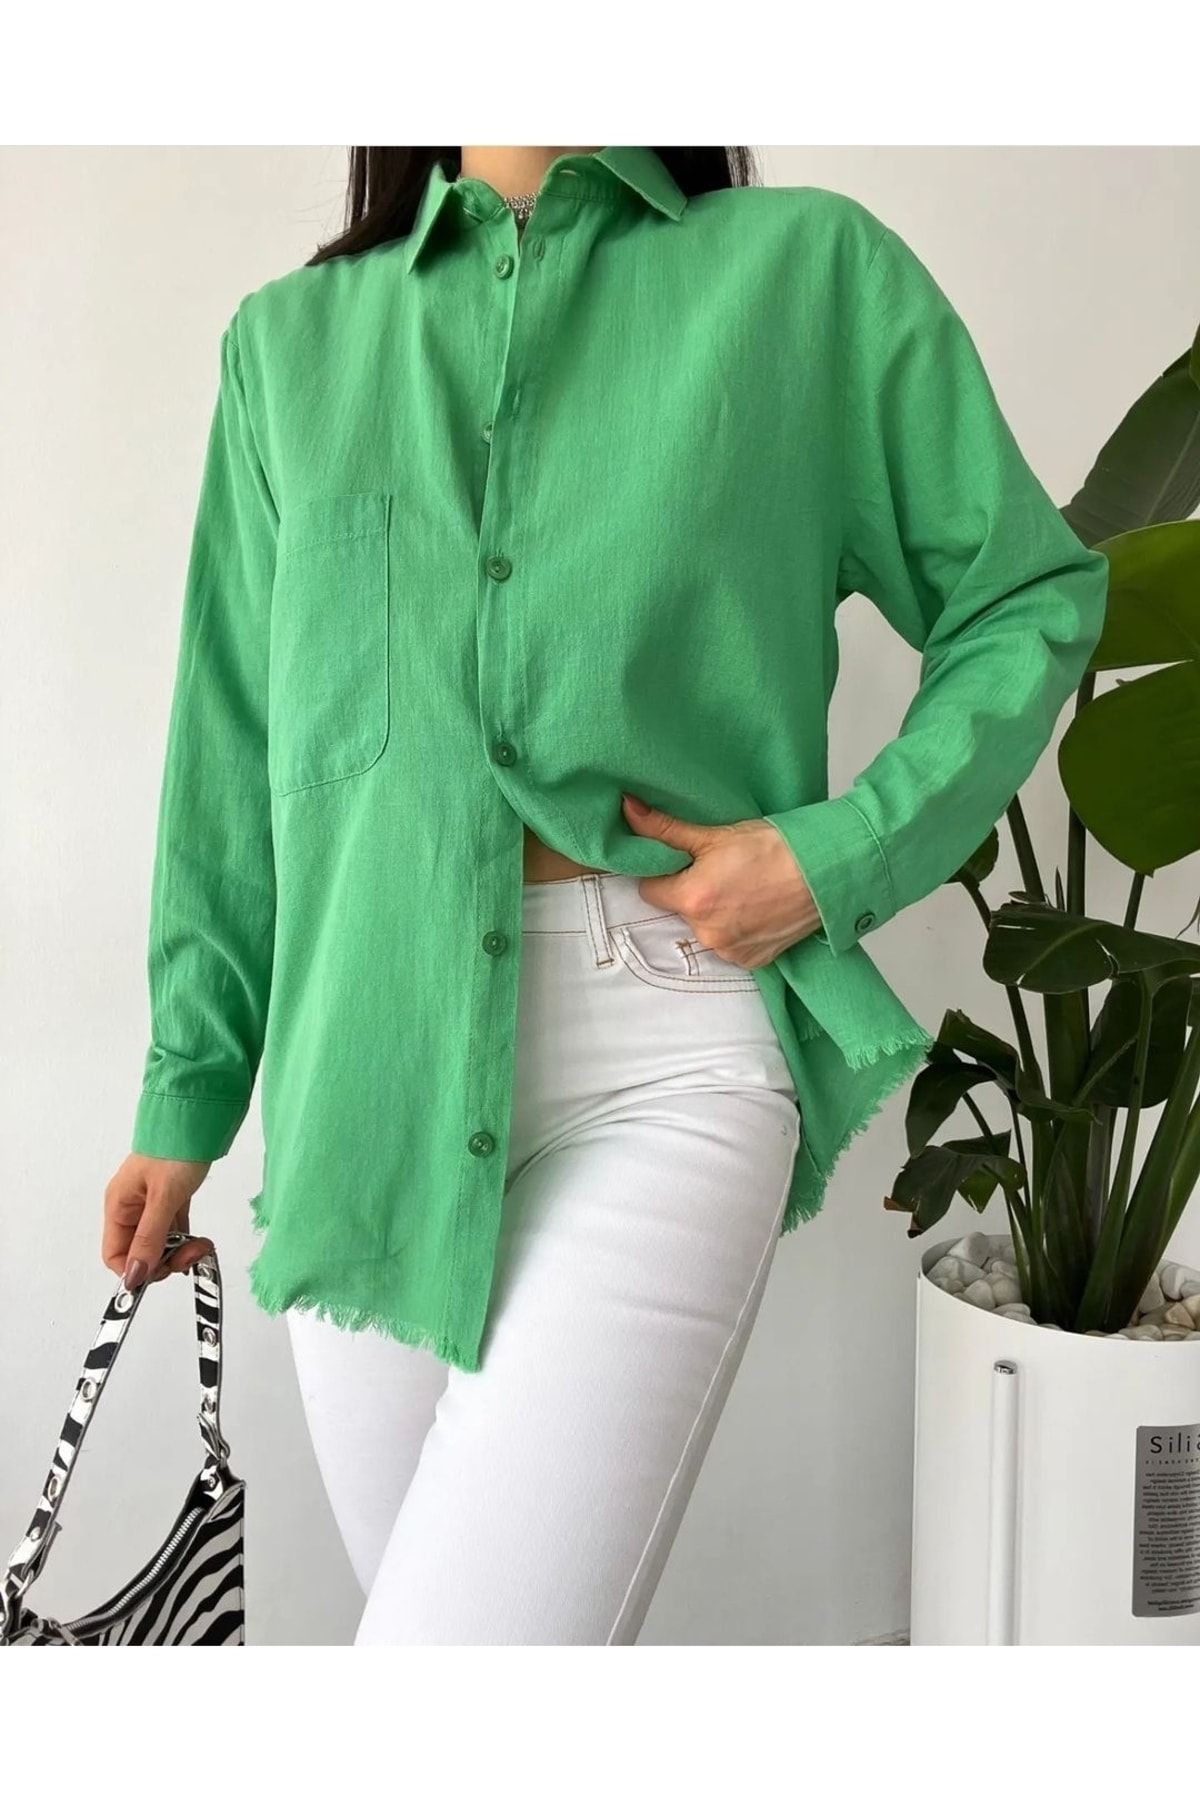 ubmbutik Kadın Tek Cepli Salaş Keten Gömlek Etek Püsküllü Yıkamalı Keten Yeşil